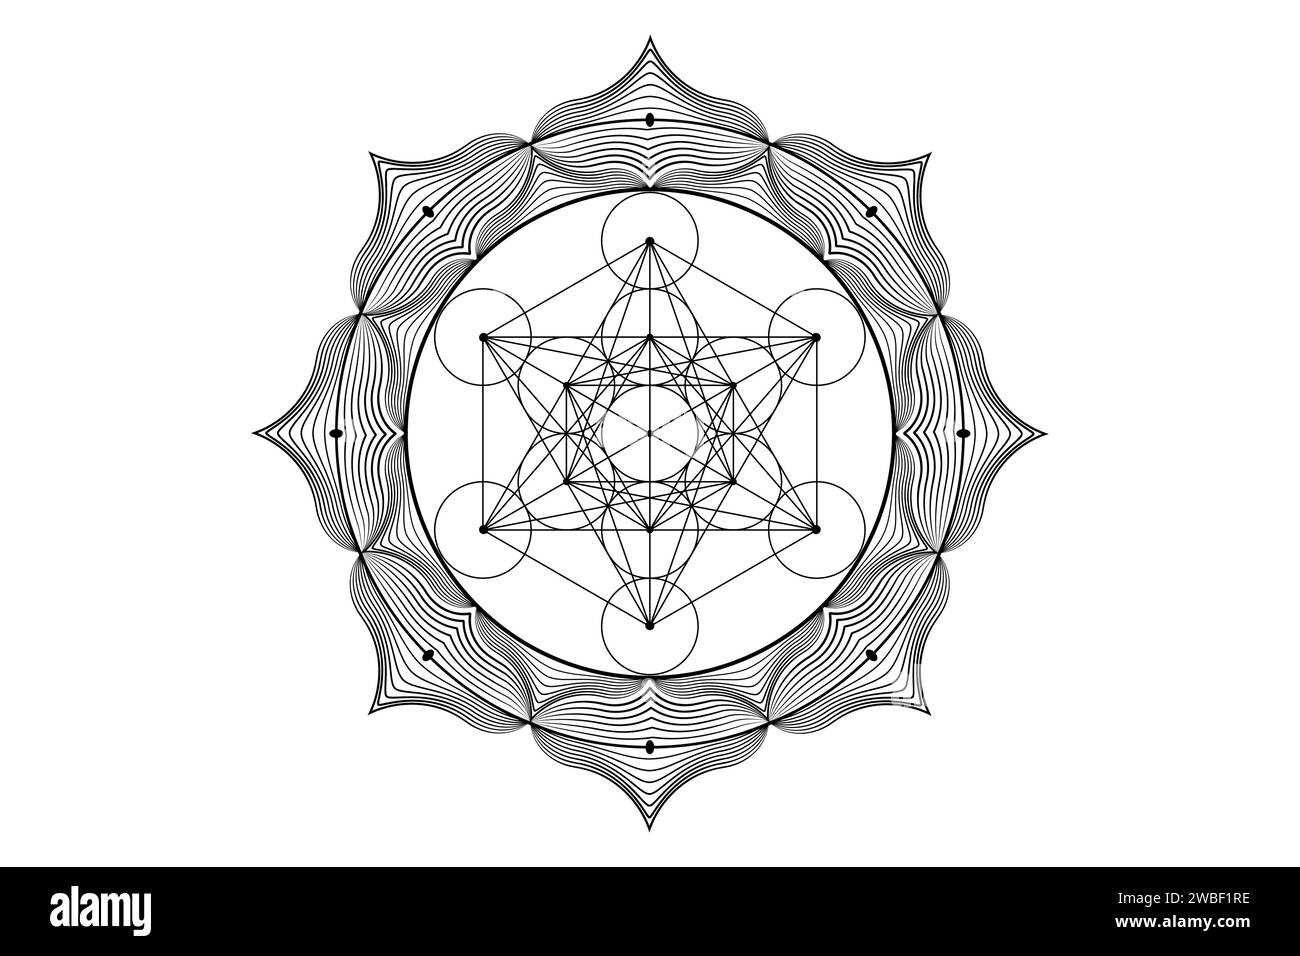 Heiliges Mandala des Metatrons Cube, mystische Blume des Lebens. Heilige Geometrie, grafisches Element Vektor isolierte Illustration. Platonische Volumenkörper mit mystischem Symbol Stock Vektor